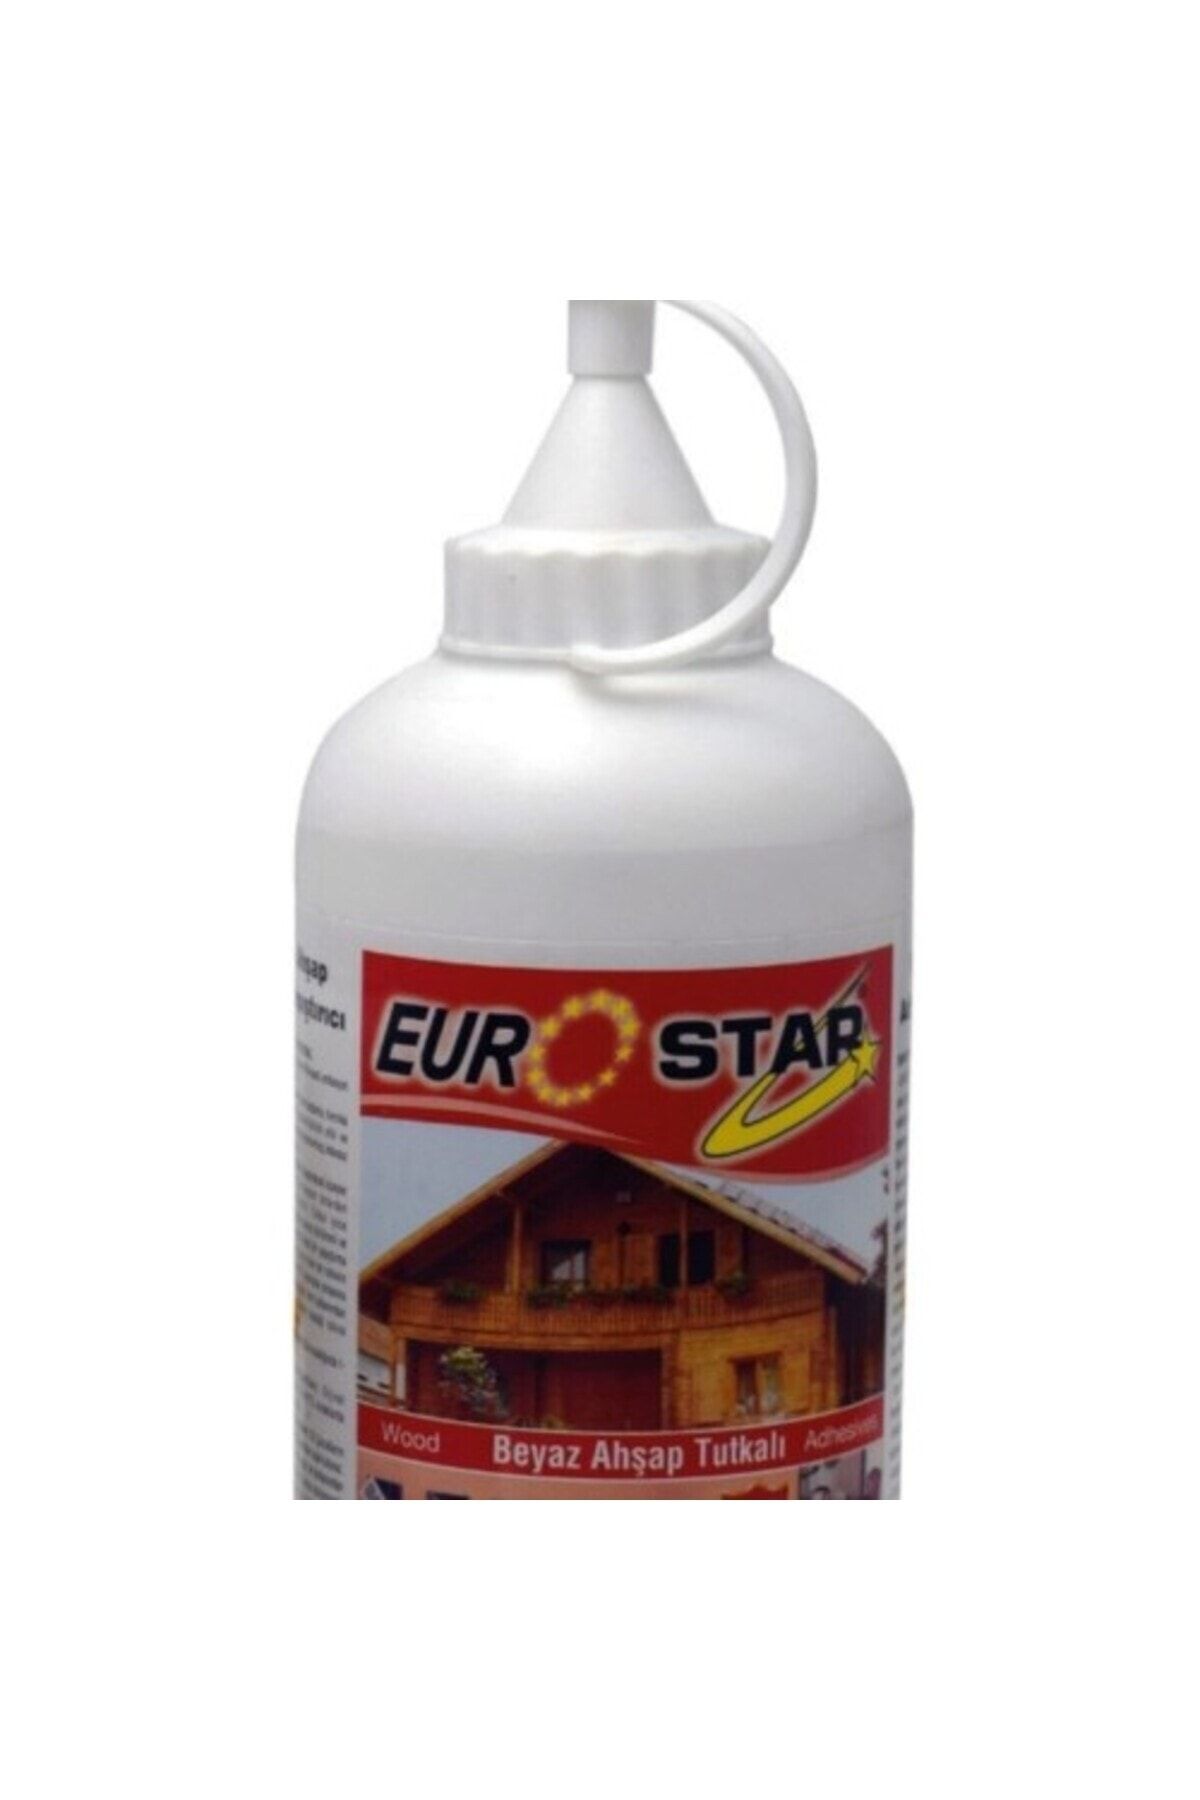 EuroStar euro star beyaz tutkal ahşap tutkalı 700 gr